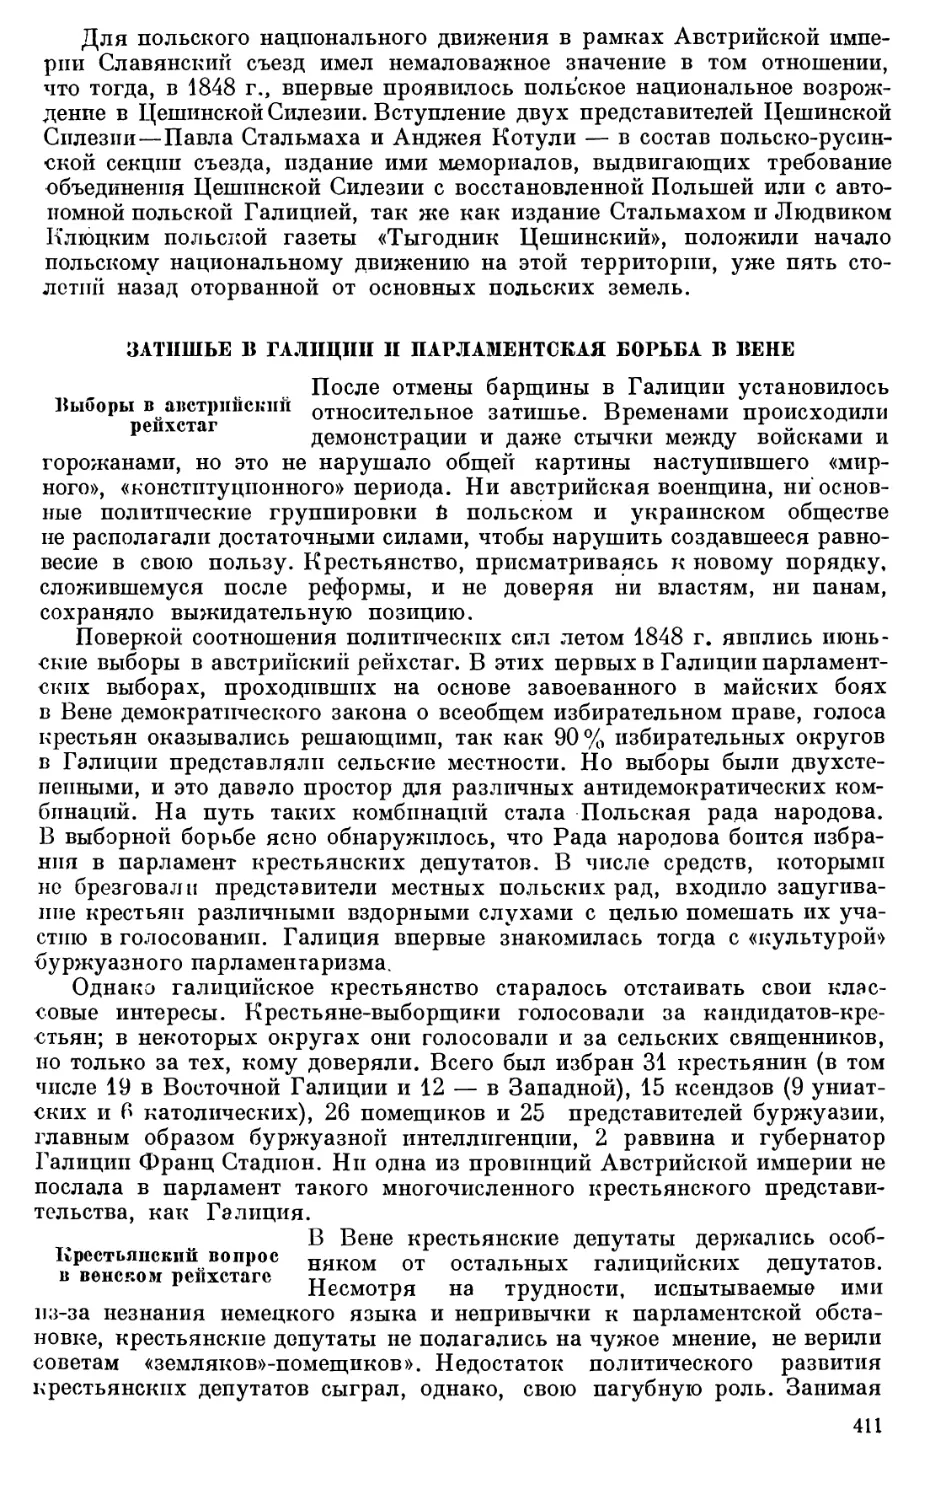 Лукиан Кобылица и его роль в крестьянском движении